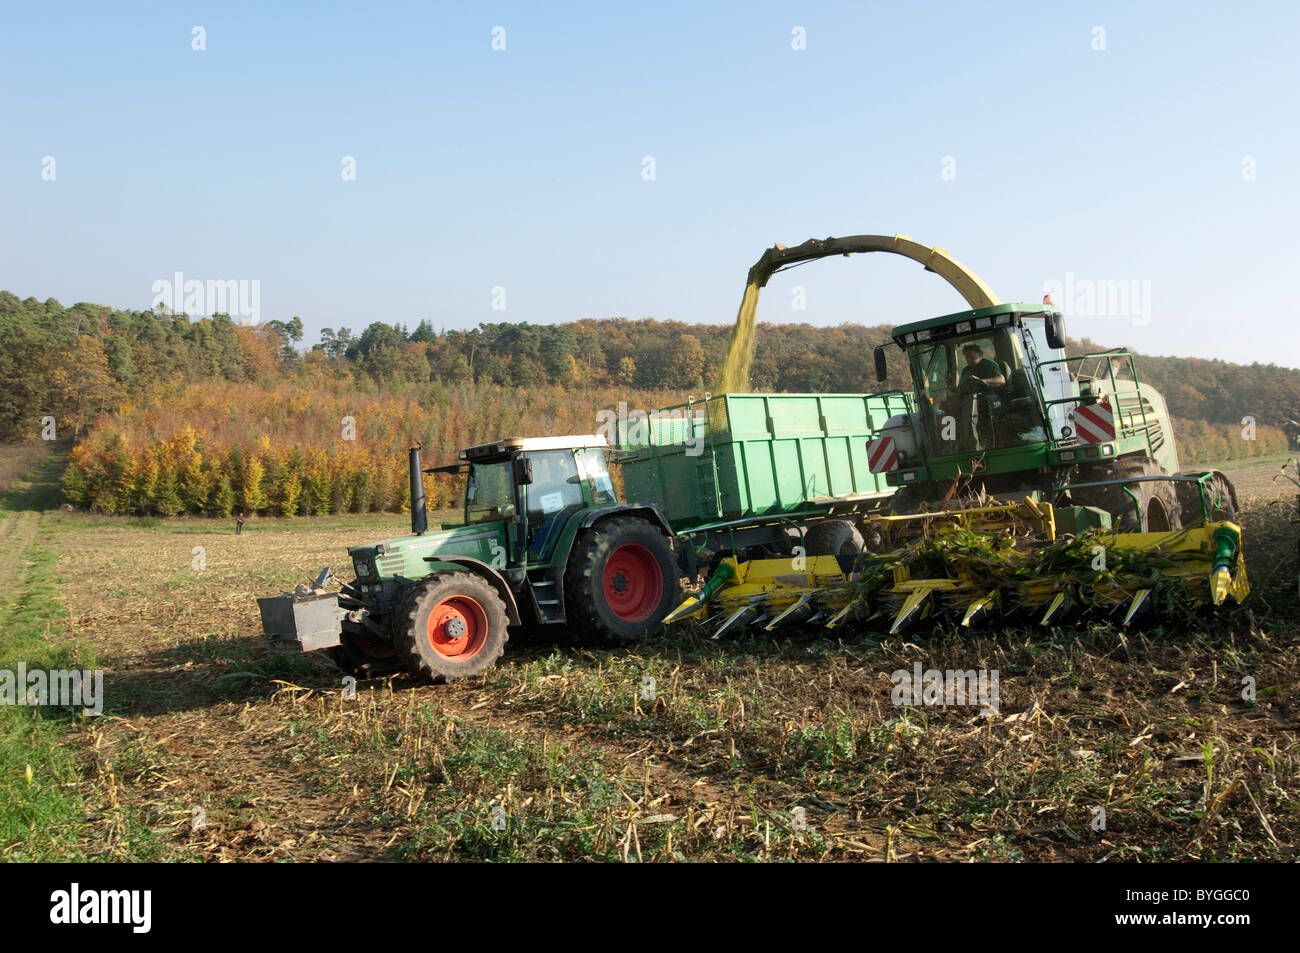 Le maïs, le maïs (Zea mays). La récolte de maïs. Un tracteur avec une remorque en marche à côté d'une récolteuse-hacheuse. Banque D'Images